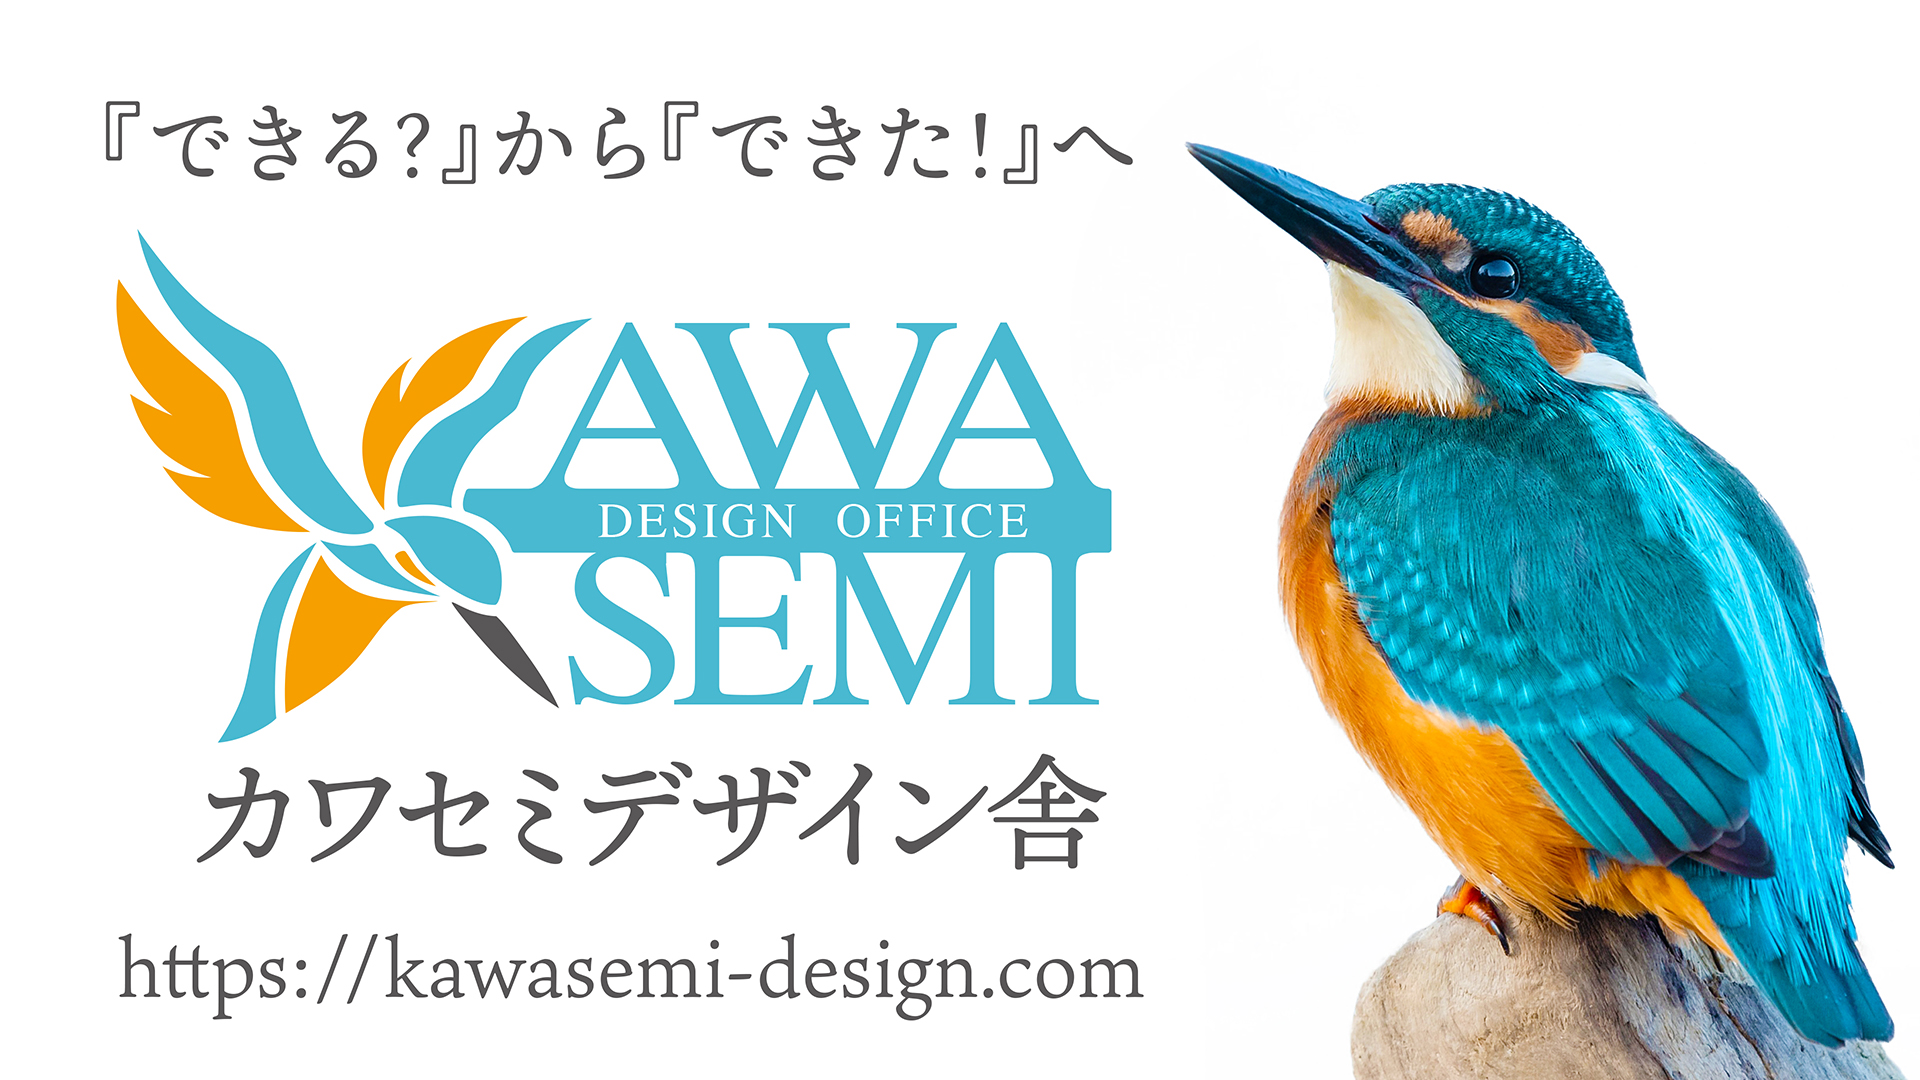 カワセミデザイン舎 ホームページ オンラインショップ制作 全国対応のデザイン事務所